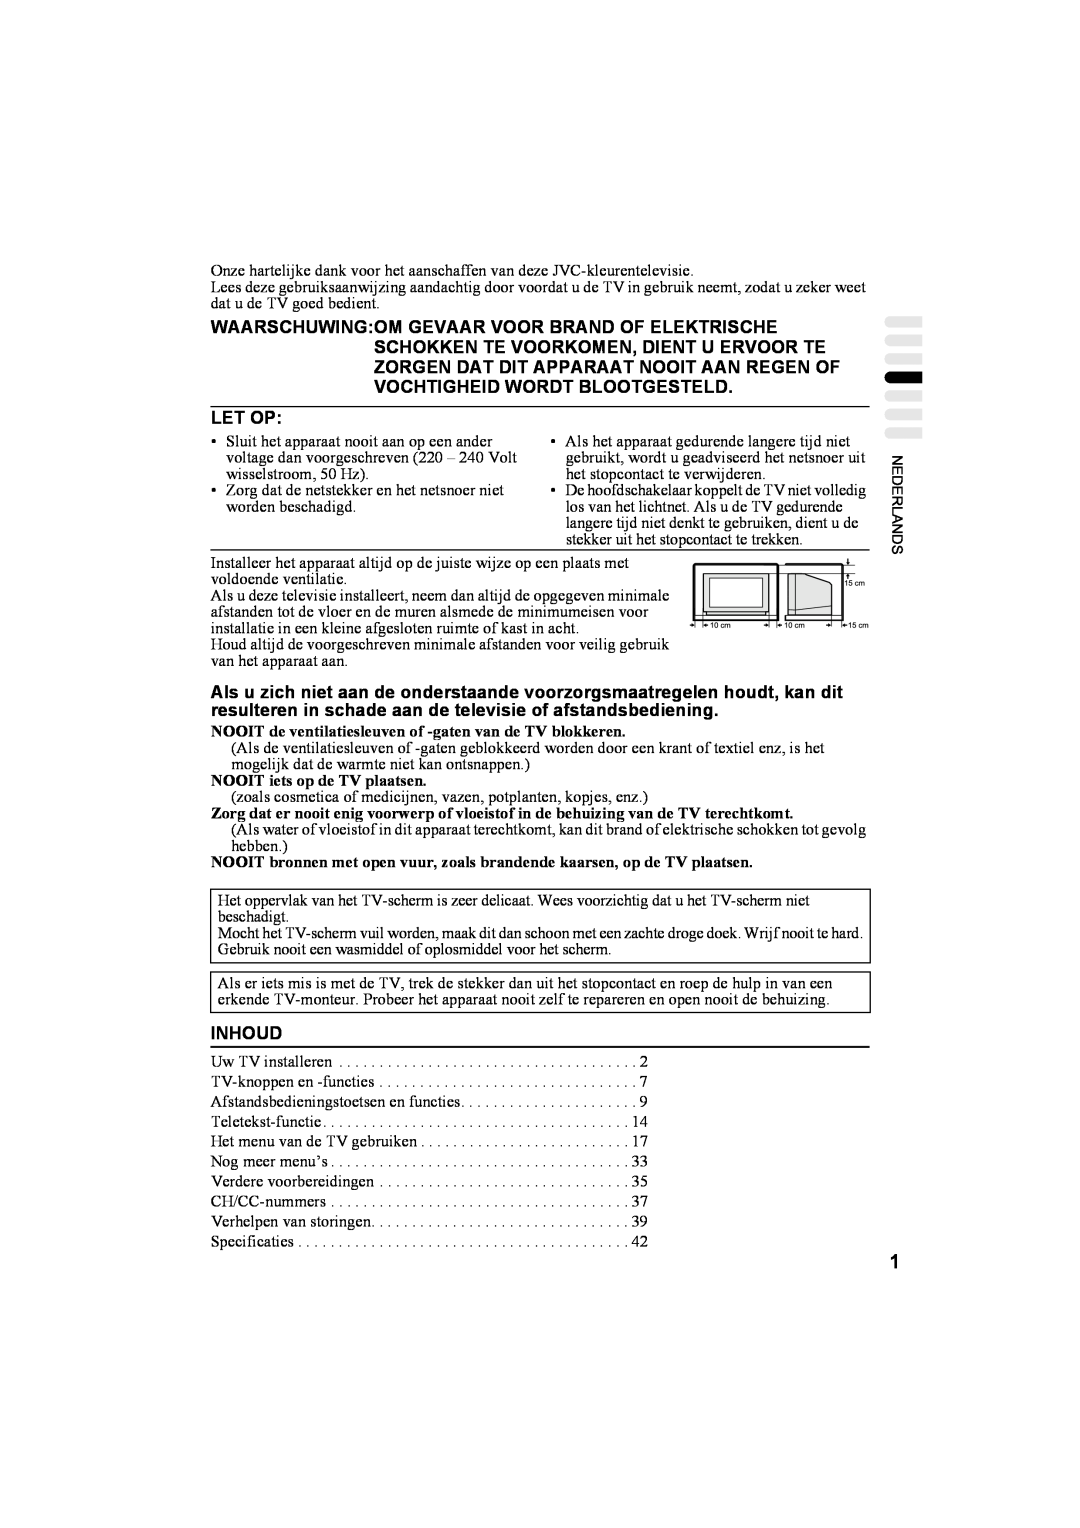 JVC AV32T20EP manual Let Op, Inhoud, NOOIT de ventilatiesleuven of -gaten van de TV blokkeren, NOOIT iets op de TV plaatsen 